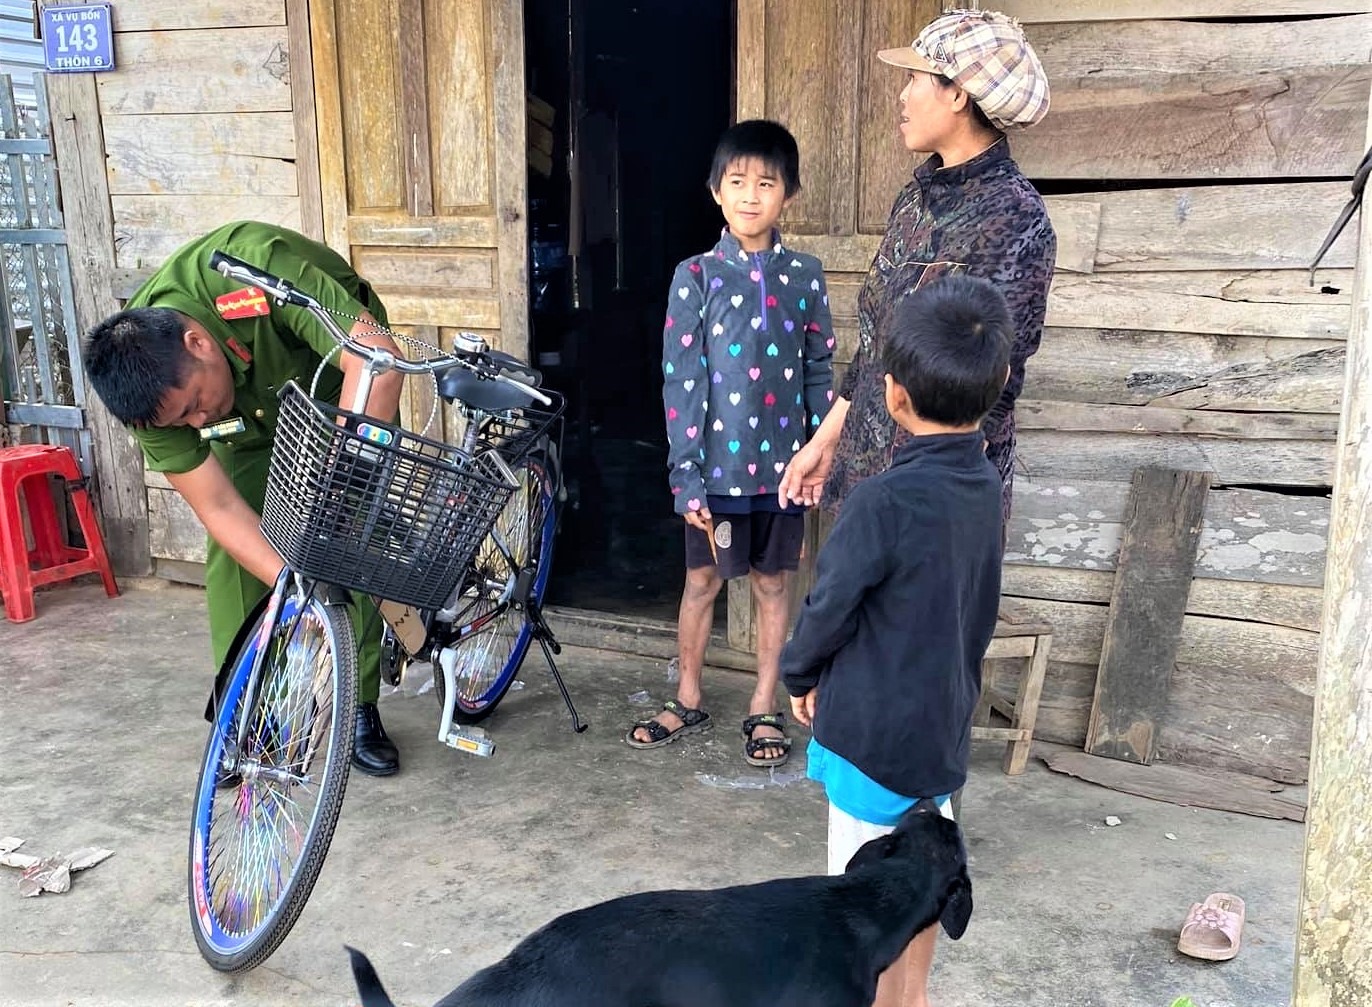 Đại úy Lê Tấn Thành trao xe đạp cho học sinh nghèo ở xã. Ảnh: Nhân vật cung cấp.